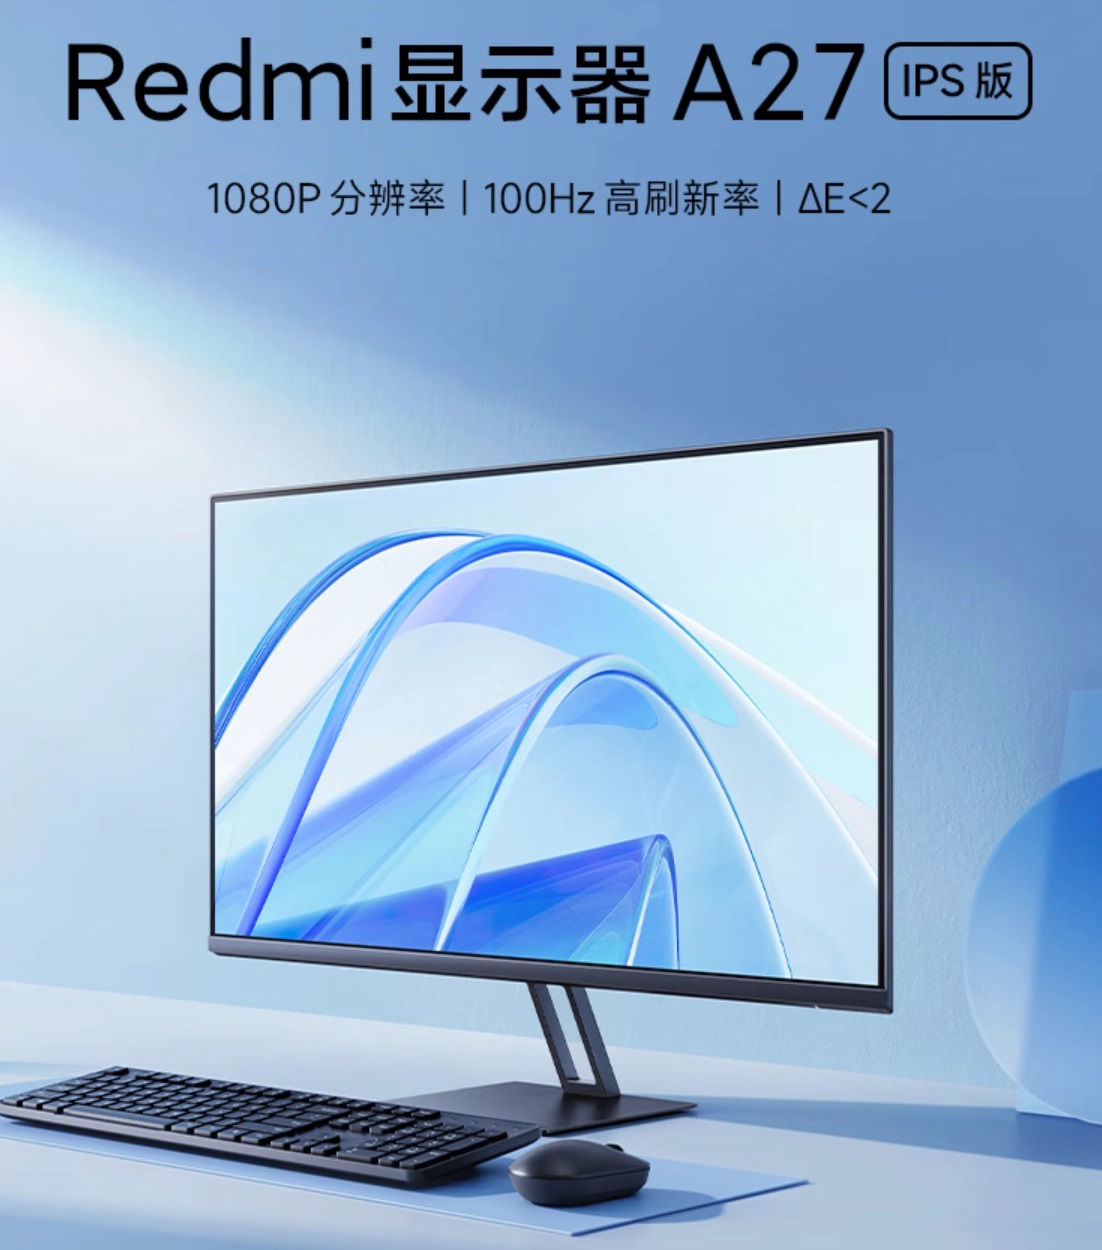 Xiaomi выпустила бюджетный монитор Redmi Display A27 IPS